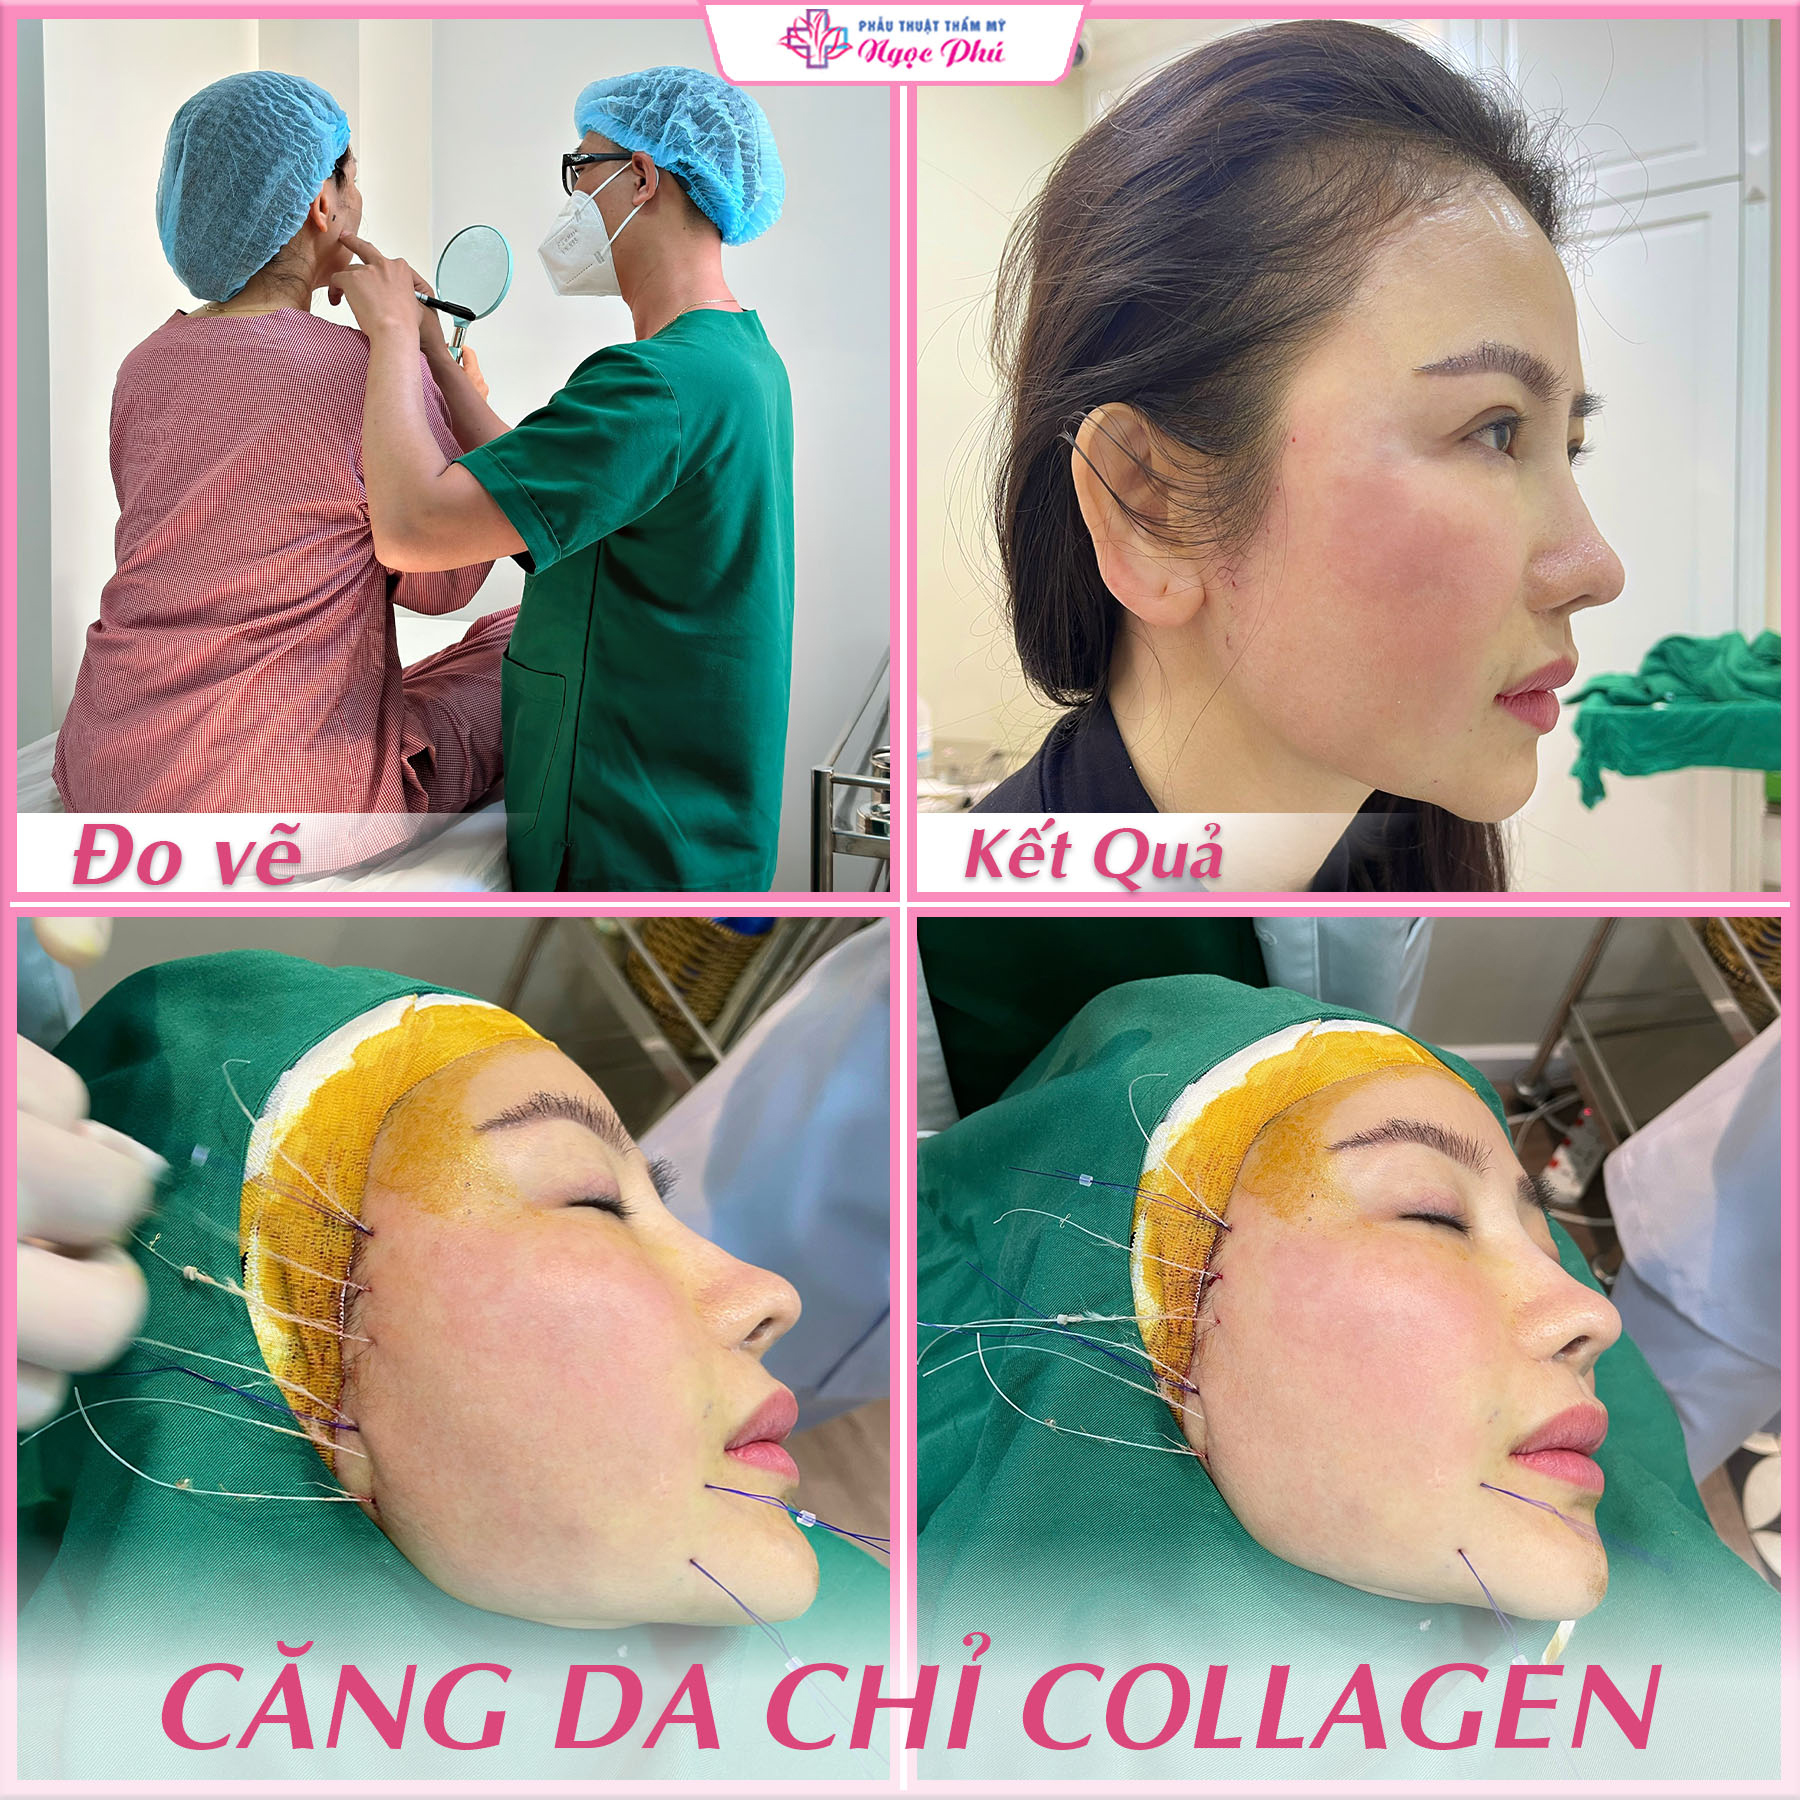 Thẩm mỹ Ngọc Phú - nơi đáng tin cậy và chất lượng cho dịch vụ căng chỉ collagen. 